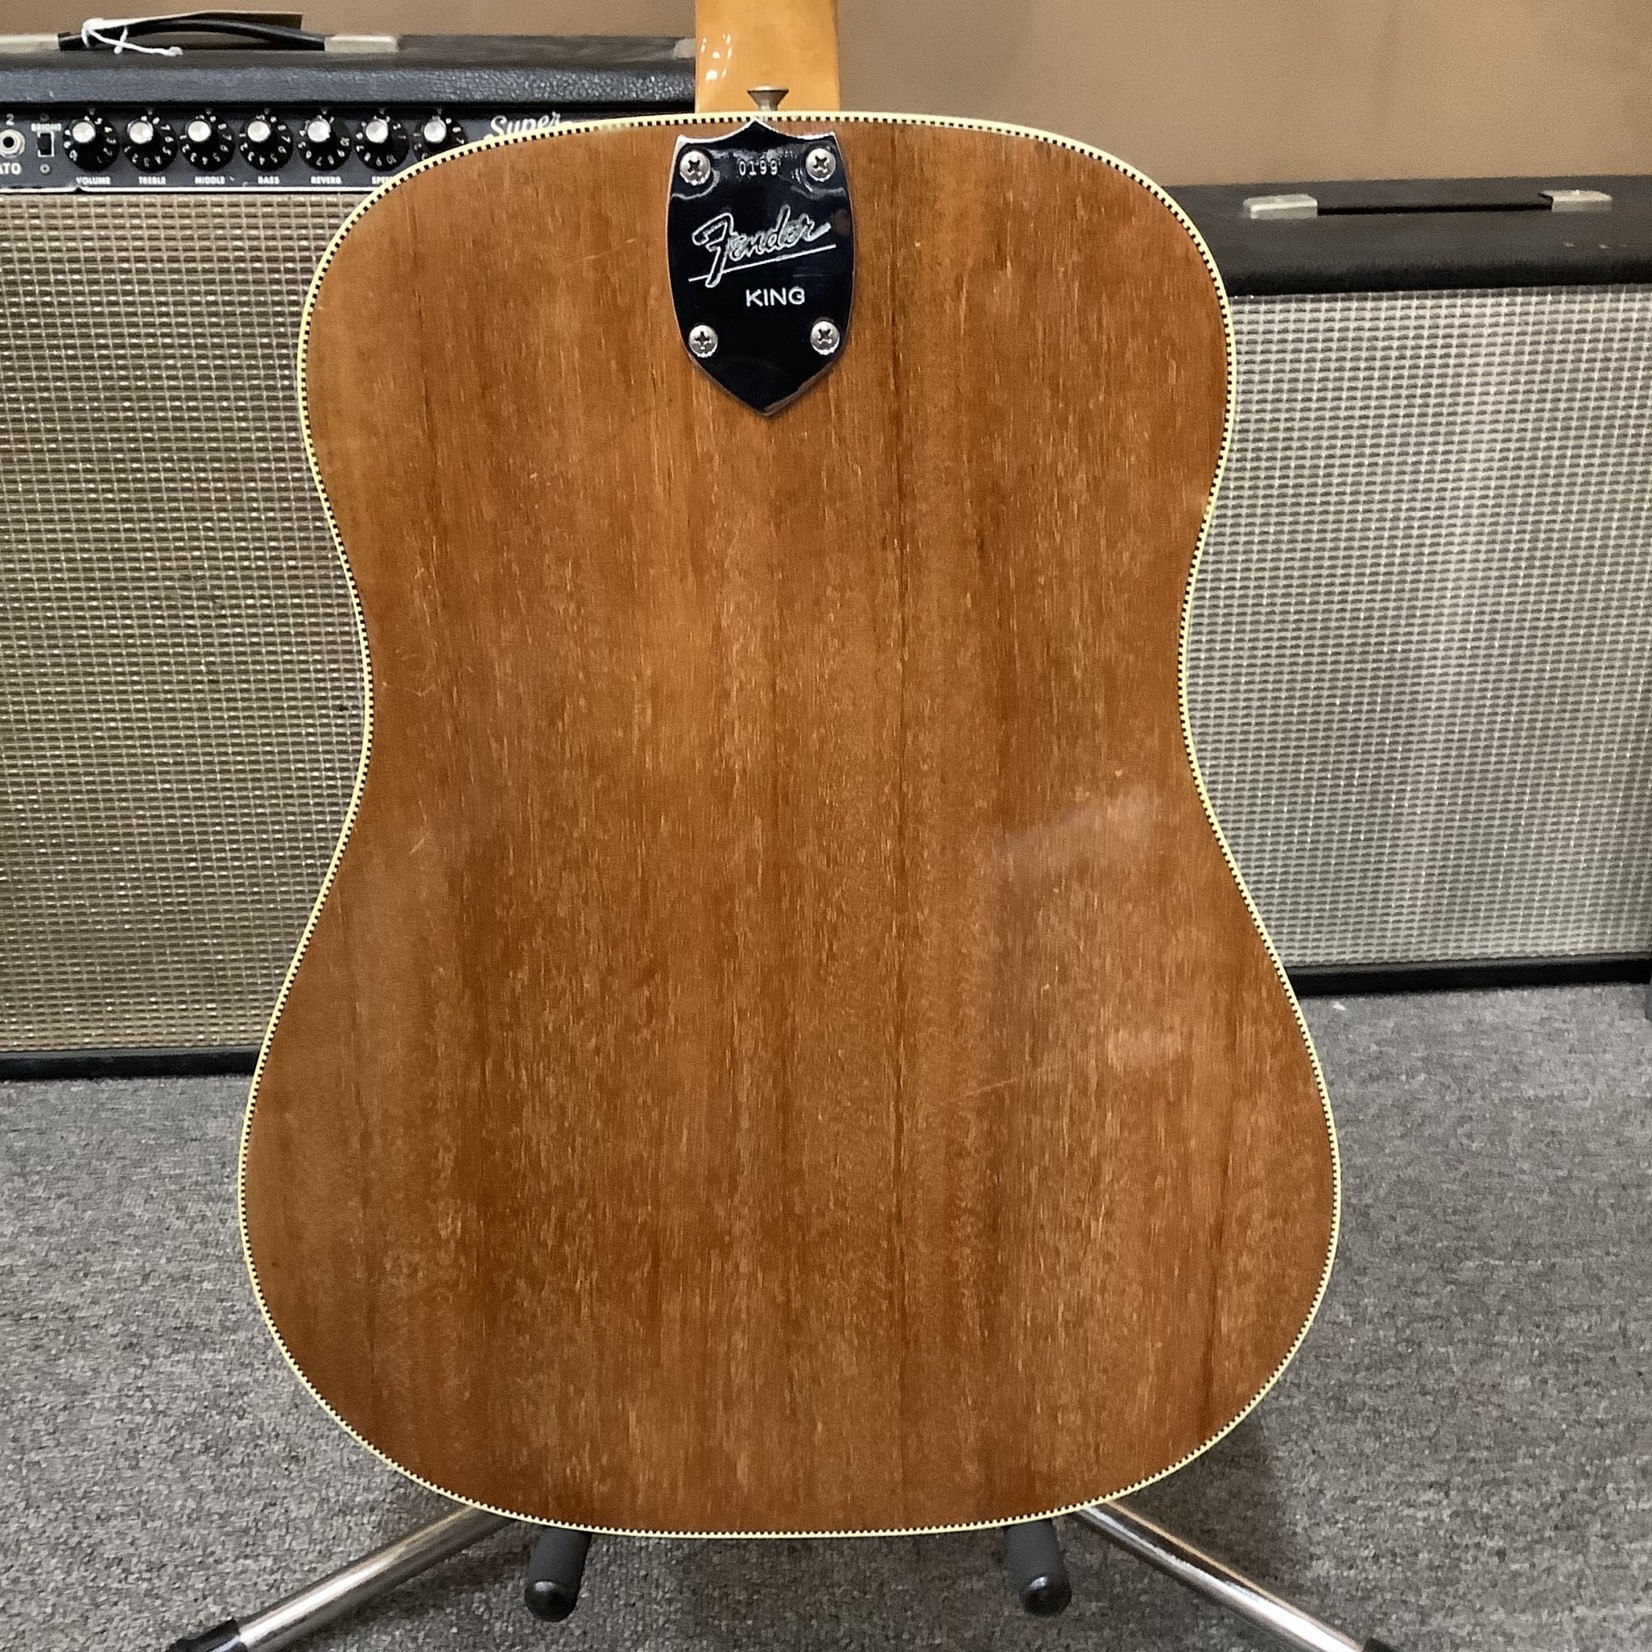 Fender 1963/64 Fender King Acoustic